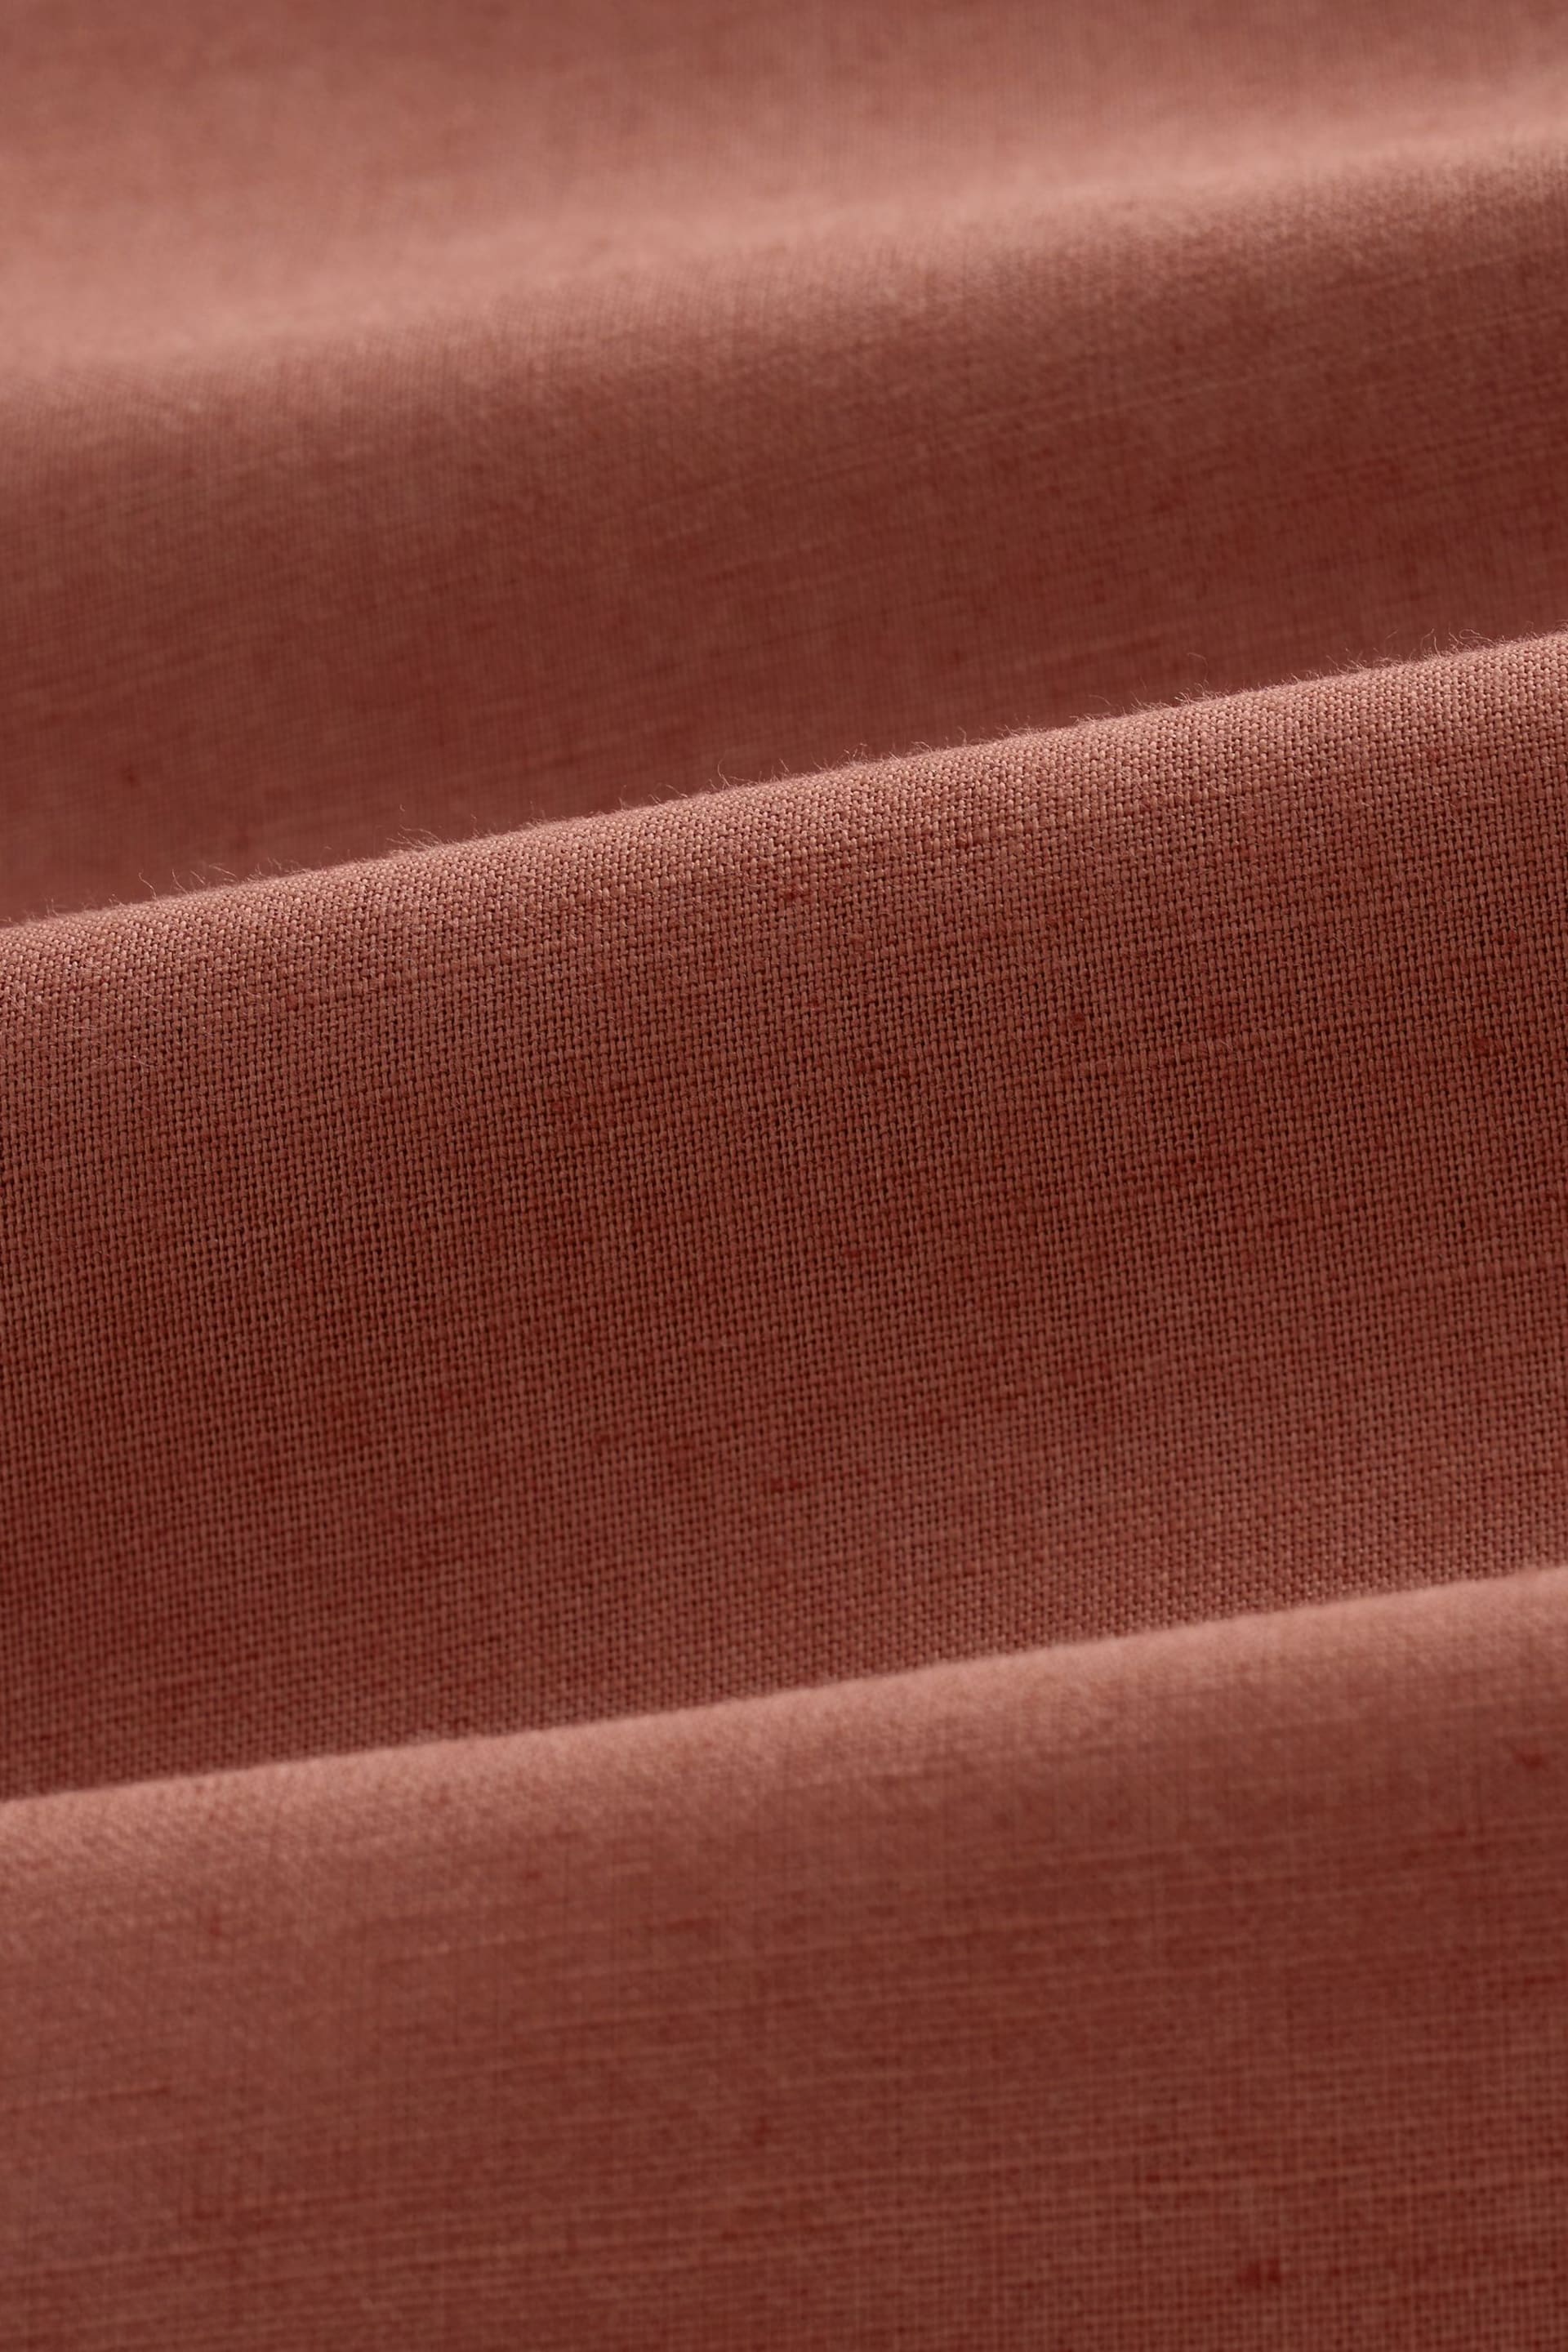 Brown Standard Collar Linen Blend Short Sleeve Shirt - Image 8 of 8